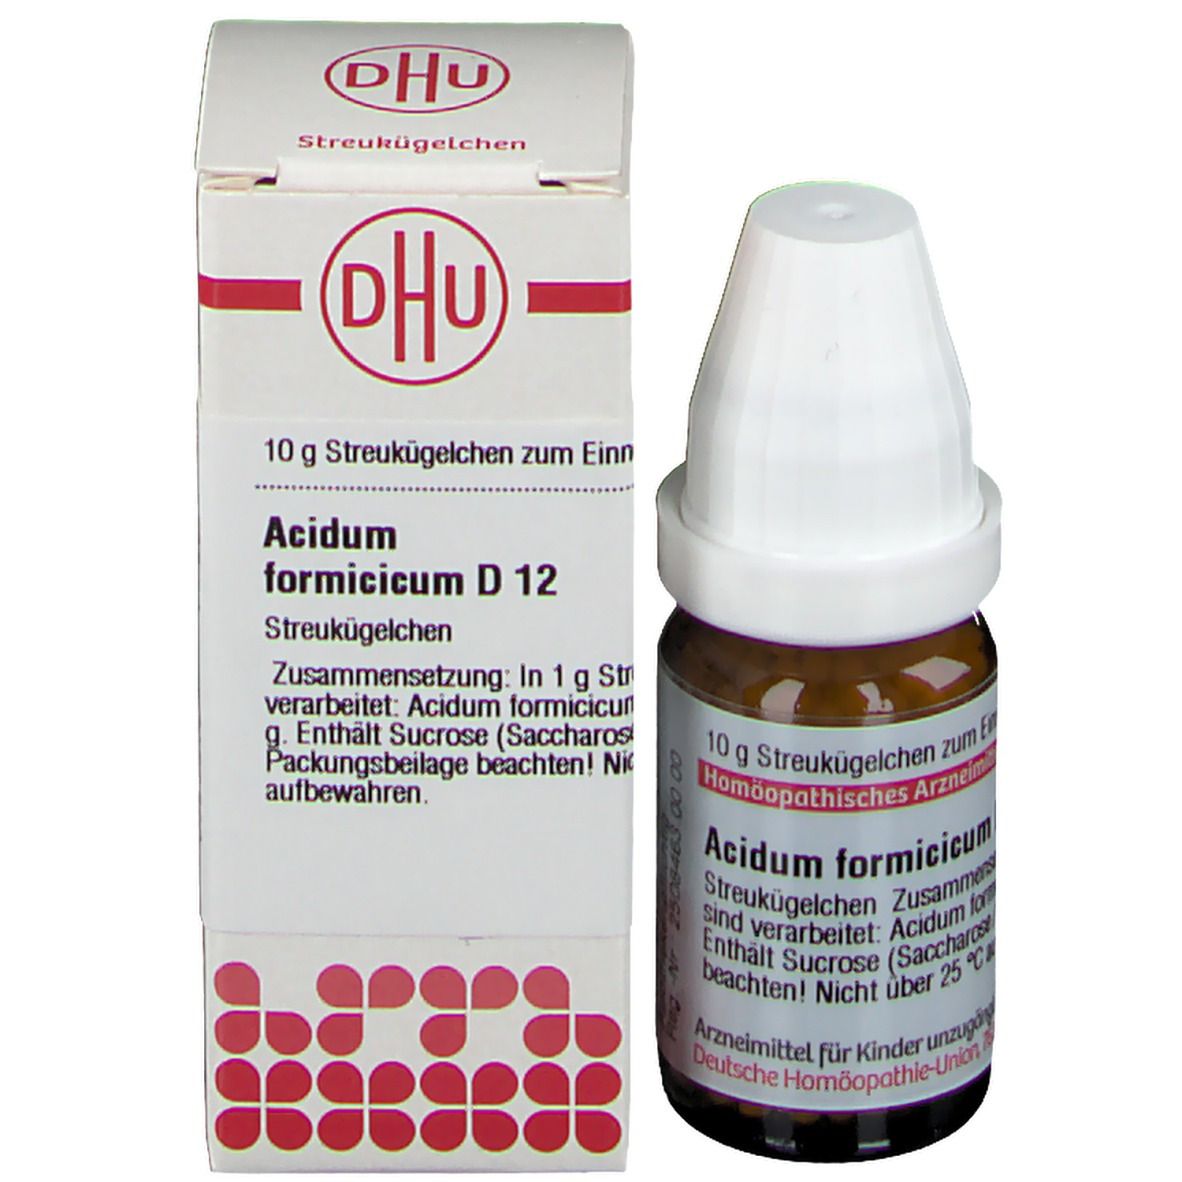 DHU Acidum Formicicum D12